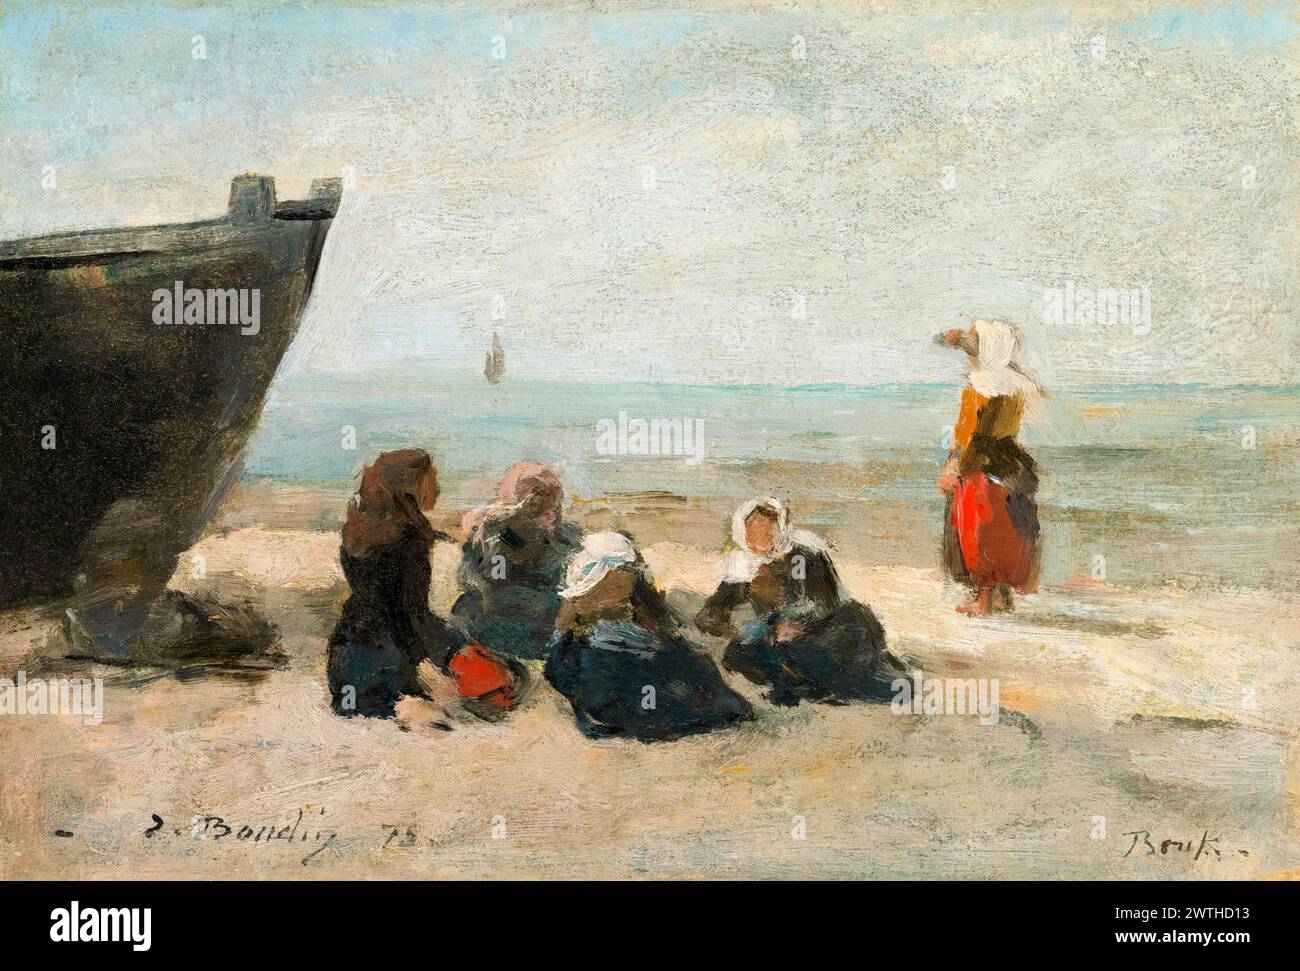 Eugène boudin, Berck, pêcheuses qui veillent au retour des bateaux, peinture à l'huile sur panneau, 1875 Banque D'Images